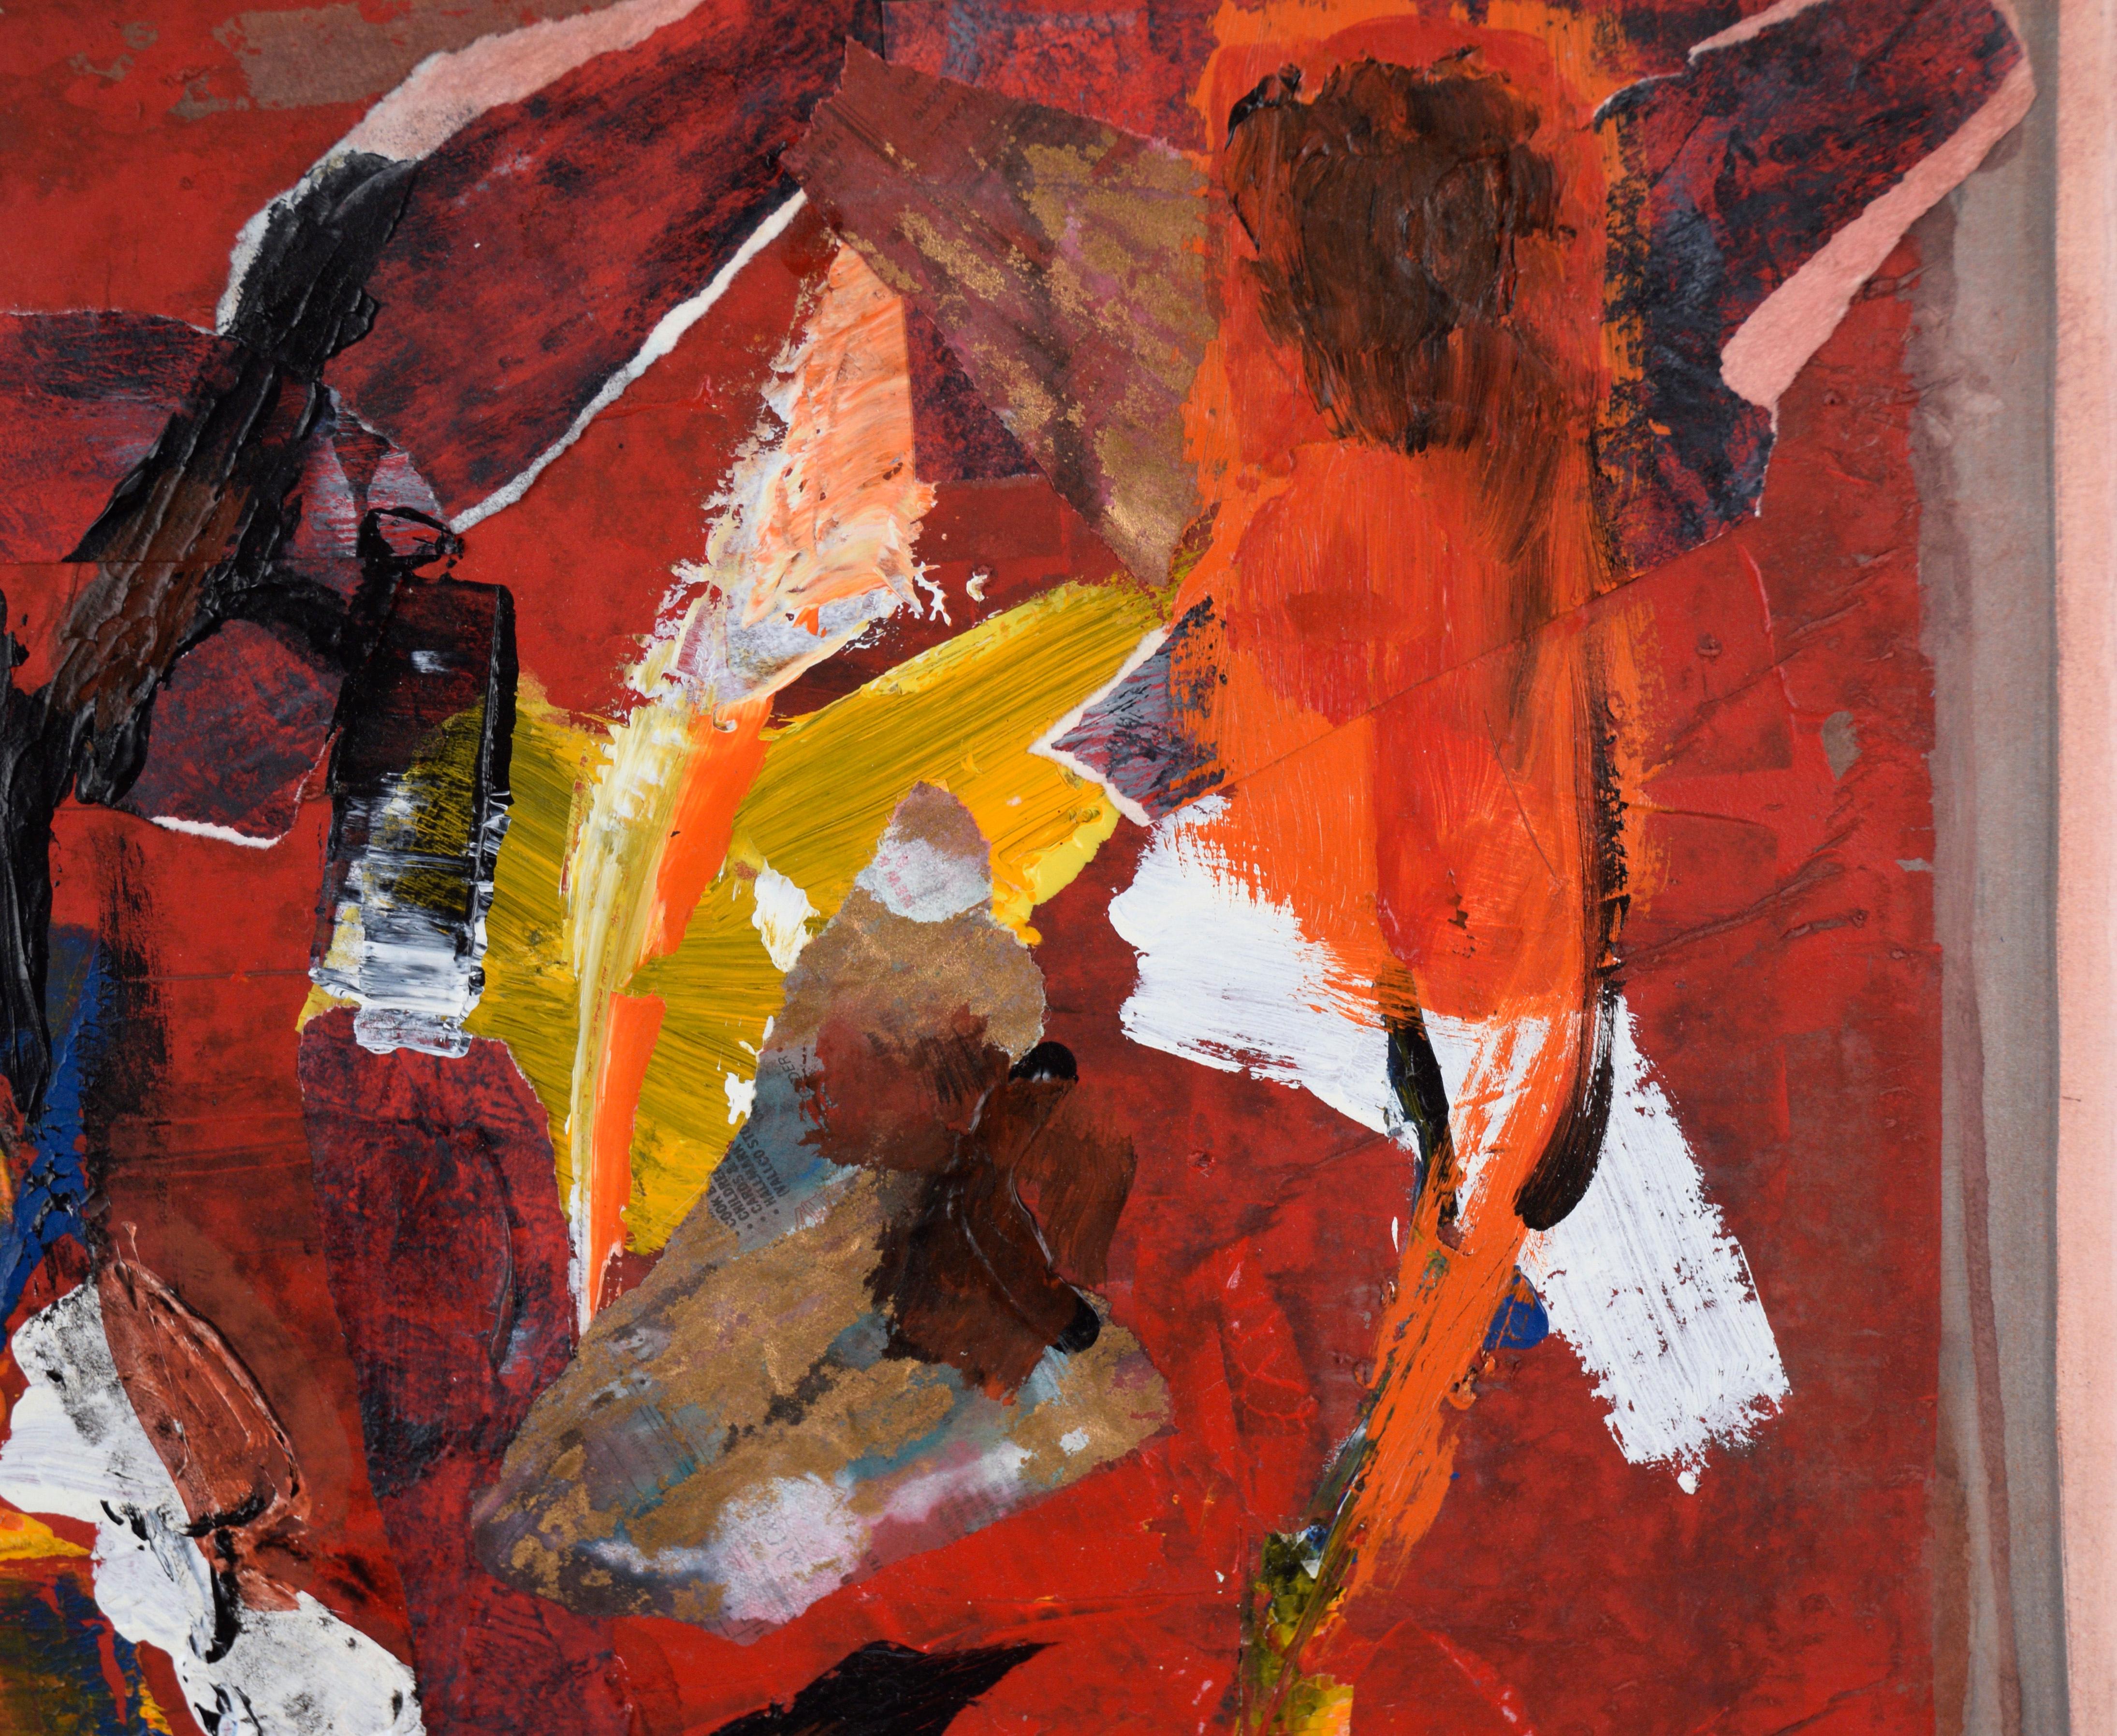 Abstrakt-expressionistische Collage aus Acryl auf Papier (Abstrakter Expressionismus), Painting, von Ricardo de Silva